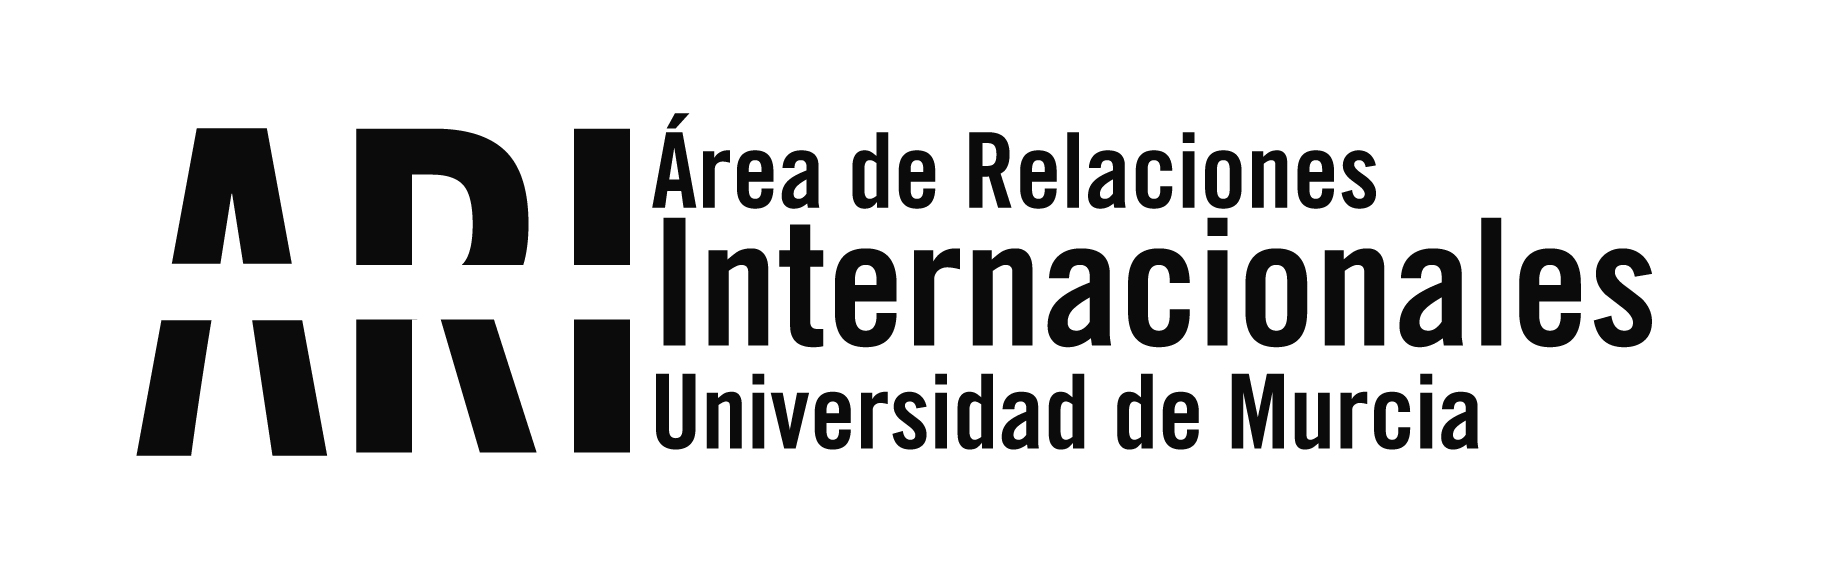 20180205 Recepción Ayuntamiento - Eventos - Área de Relaciones Internacionales